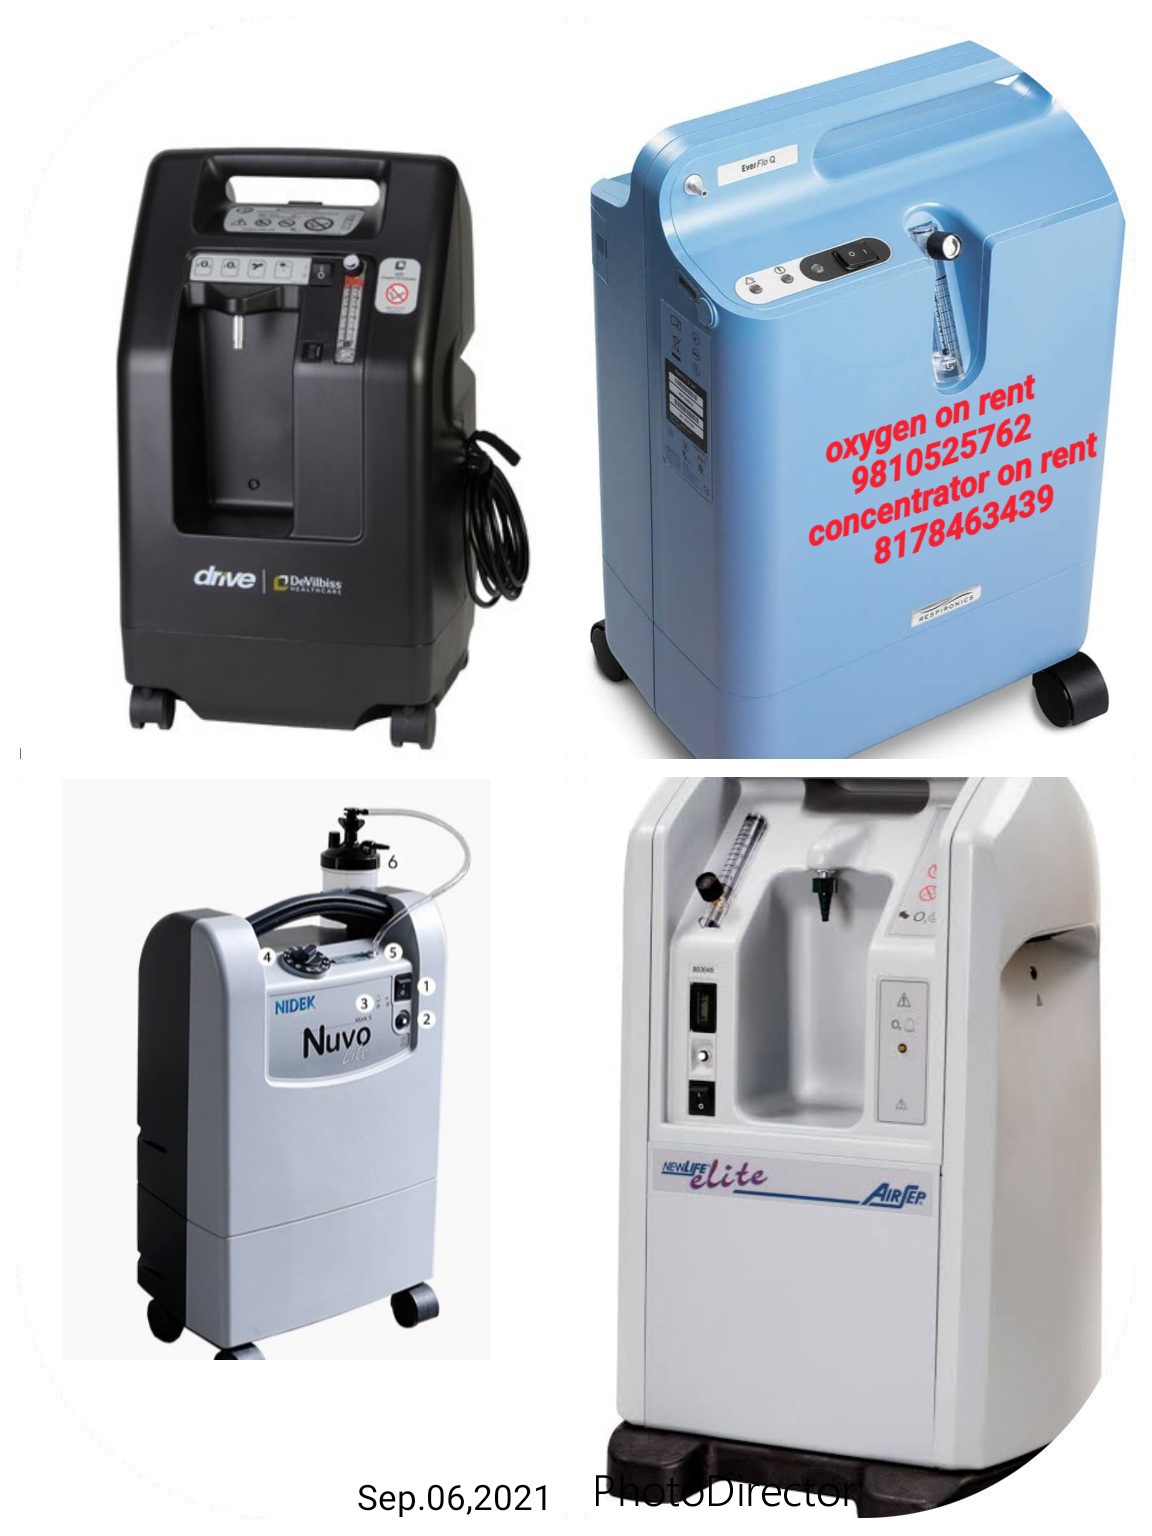 9810525762 oxygen concentrator rent sale repair services 